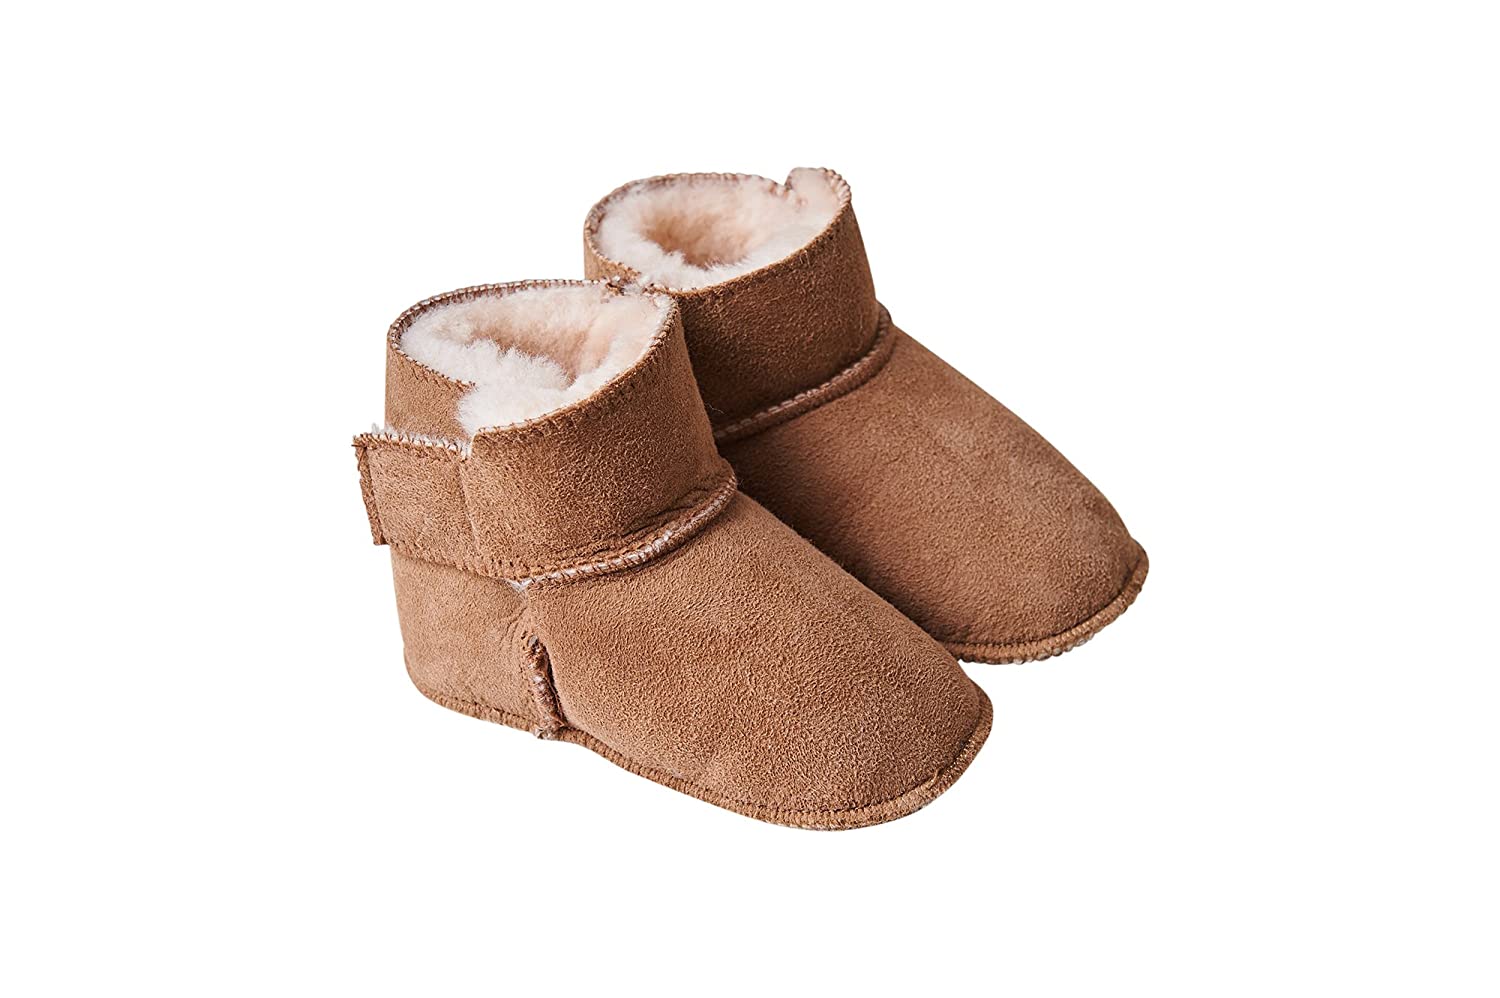 Fellhof 5101 Cuddly Baby Boots, Size 1 (16/17) 22/23